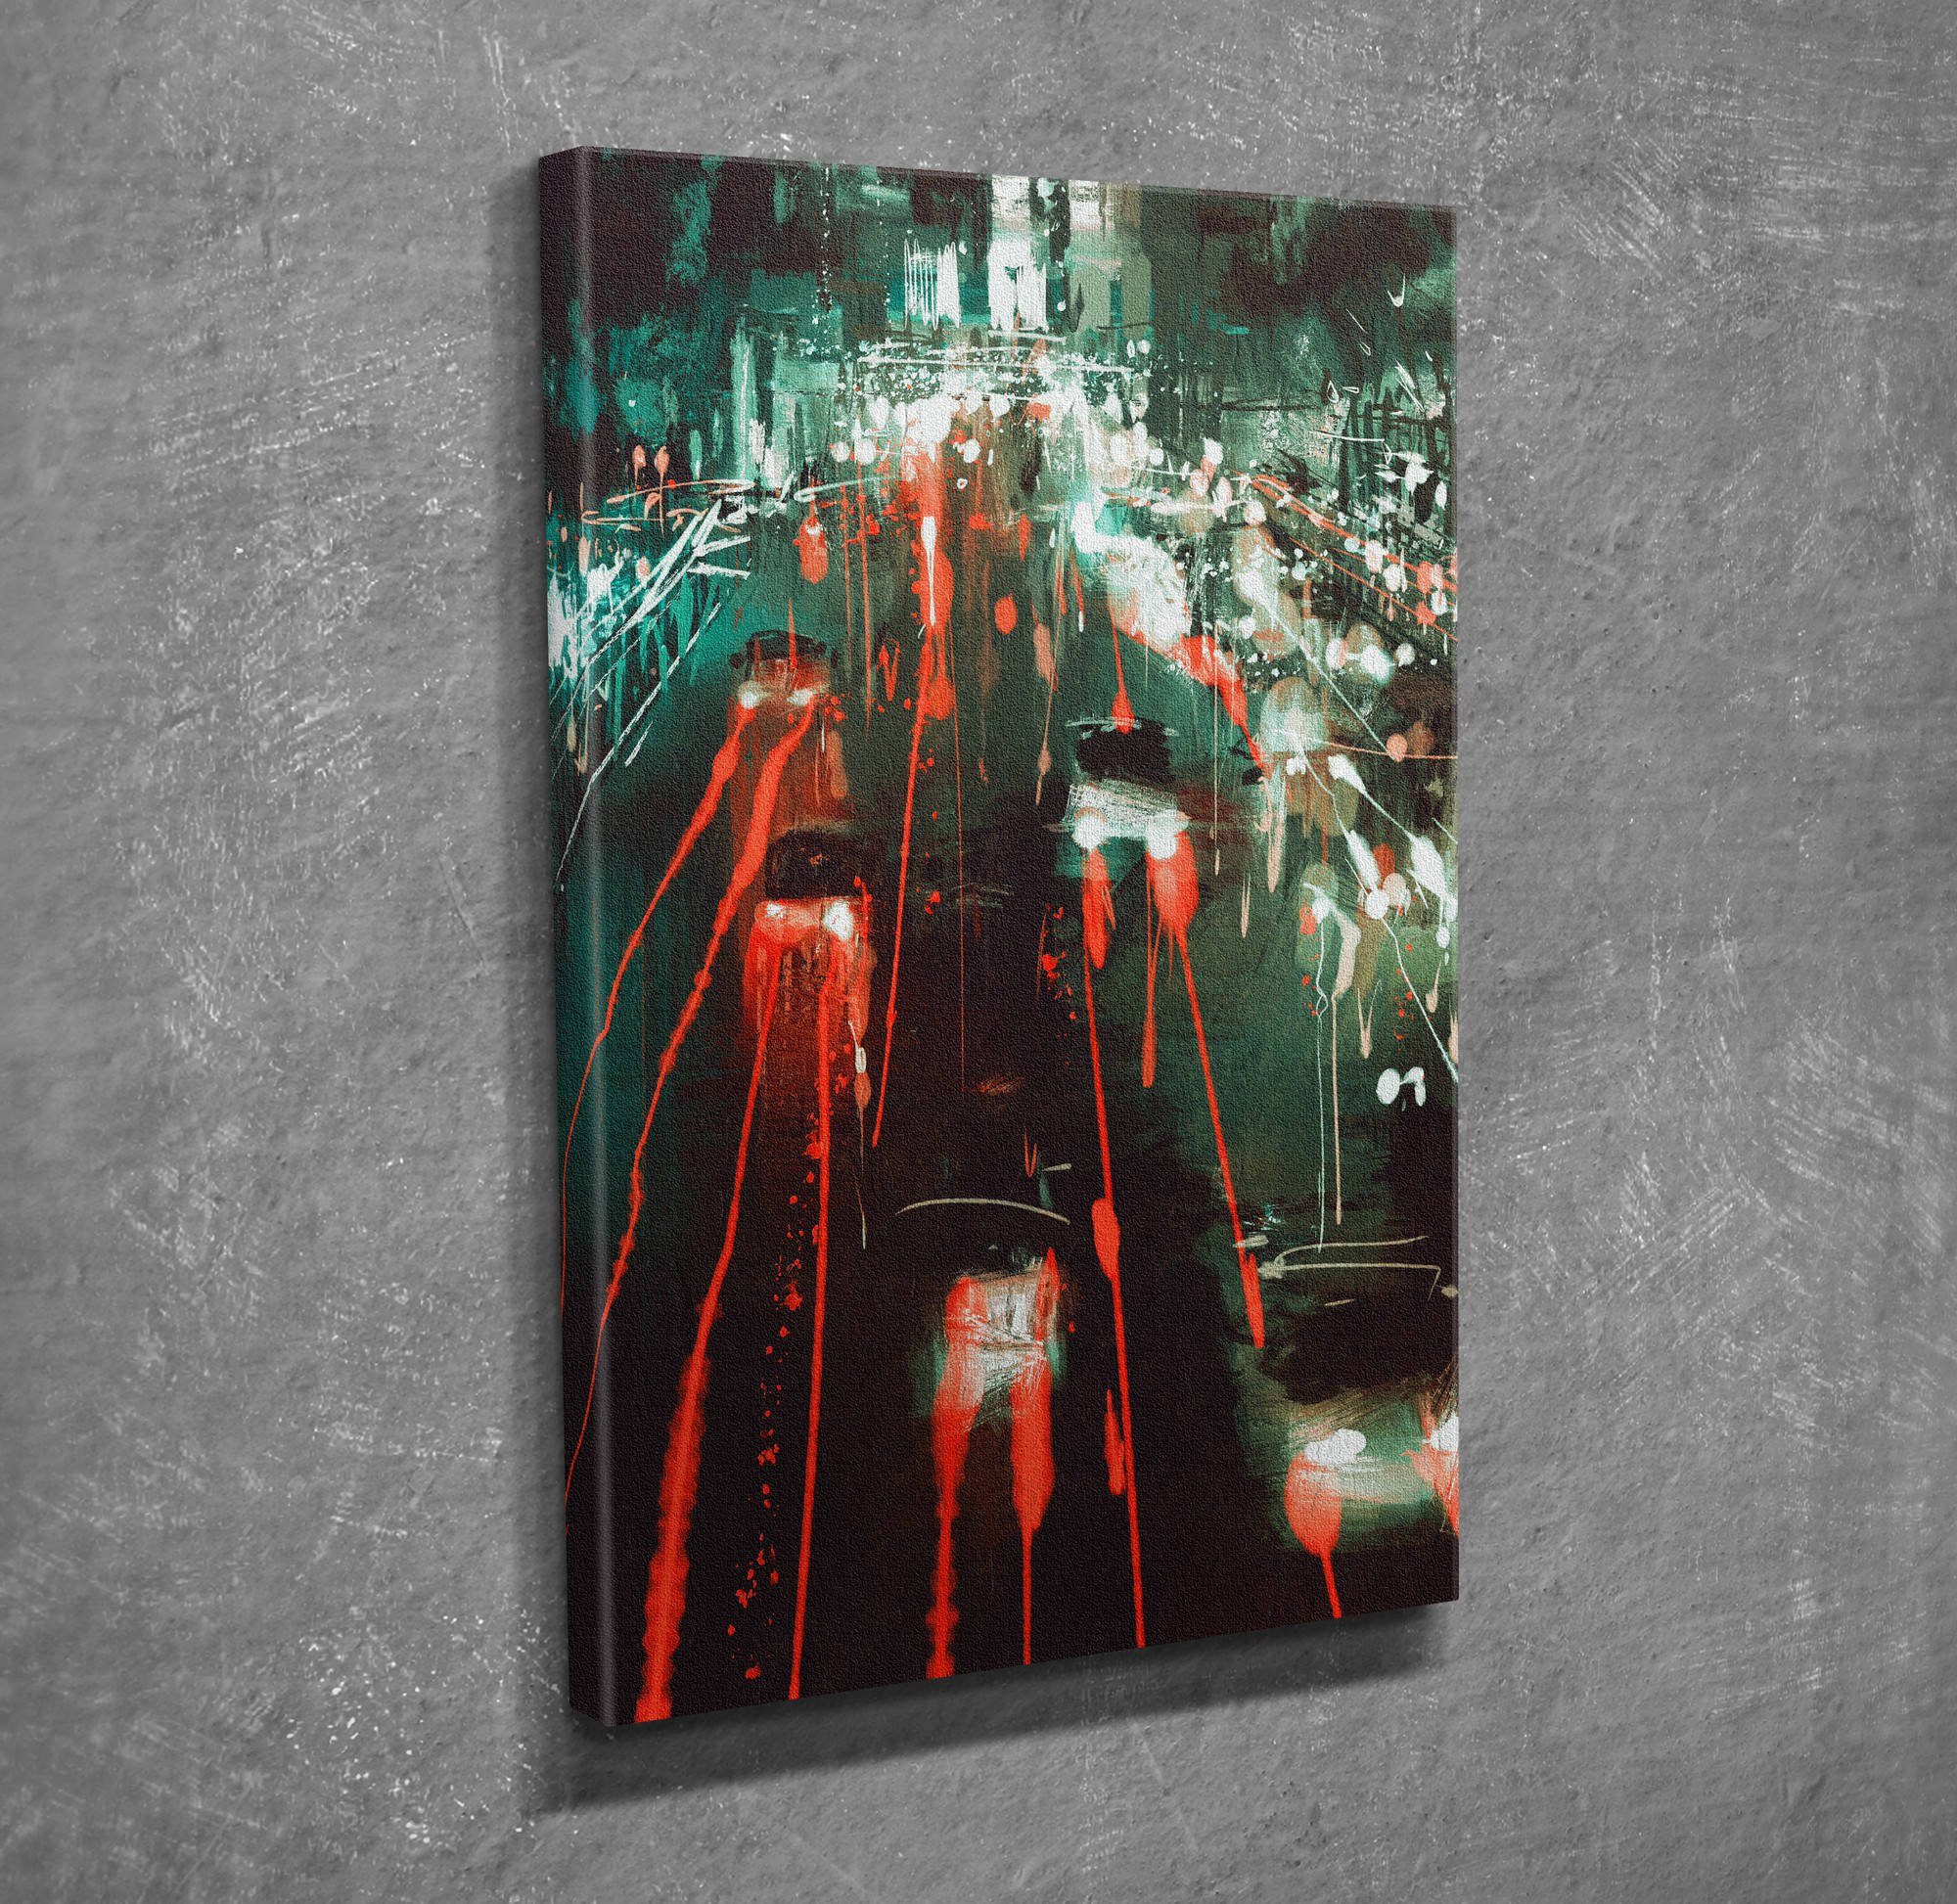 Wallity Leinwandbild MJS3229, Bunt, 30 x 40 cm, 100% Leinwand | Leinwandbilder